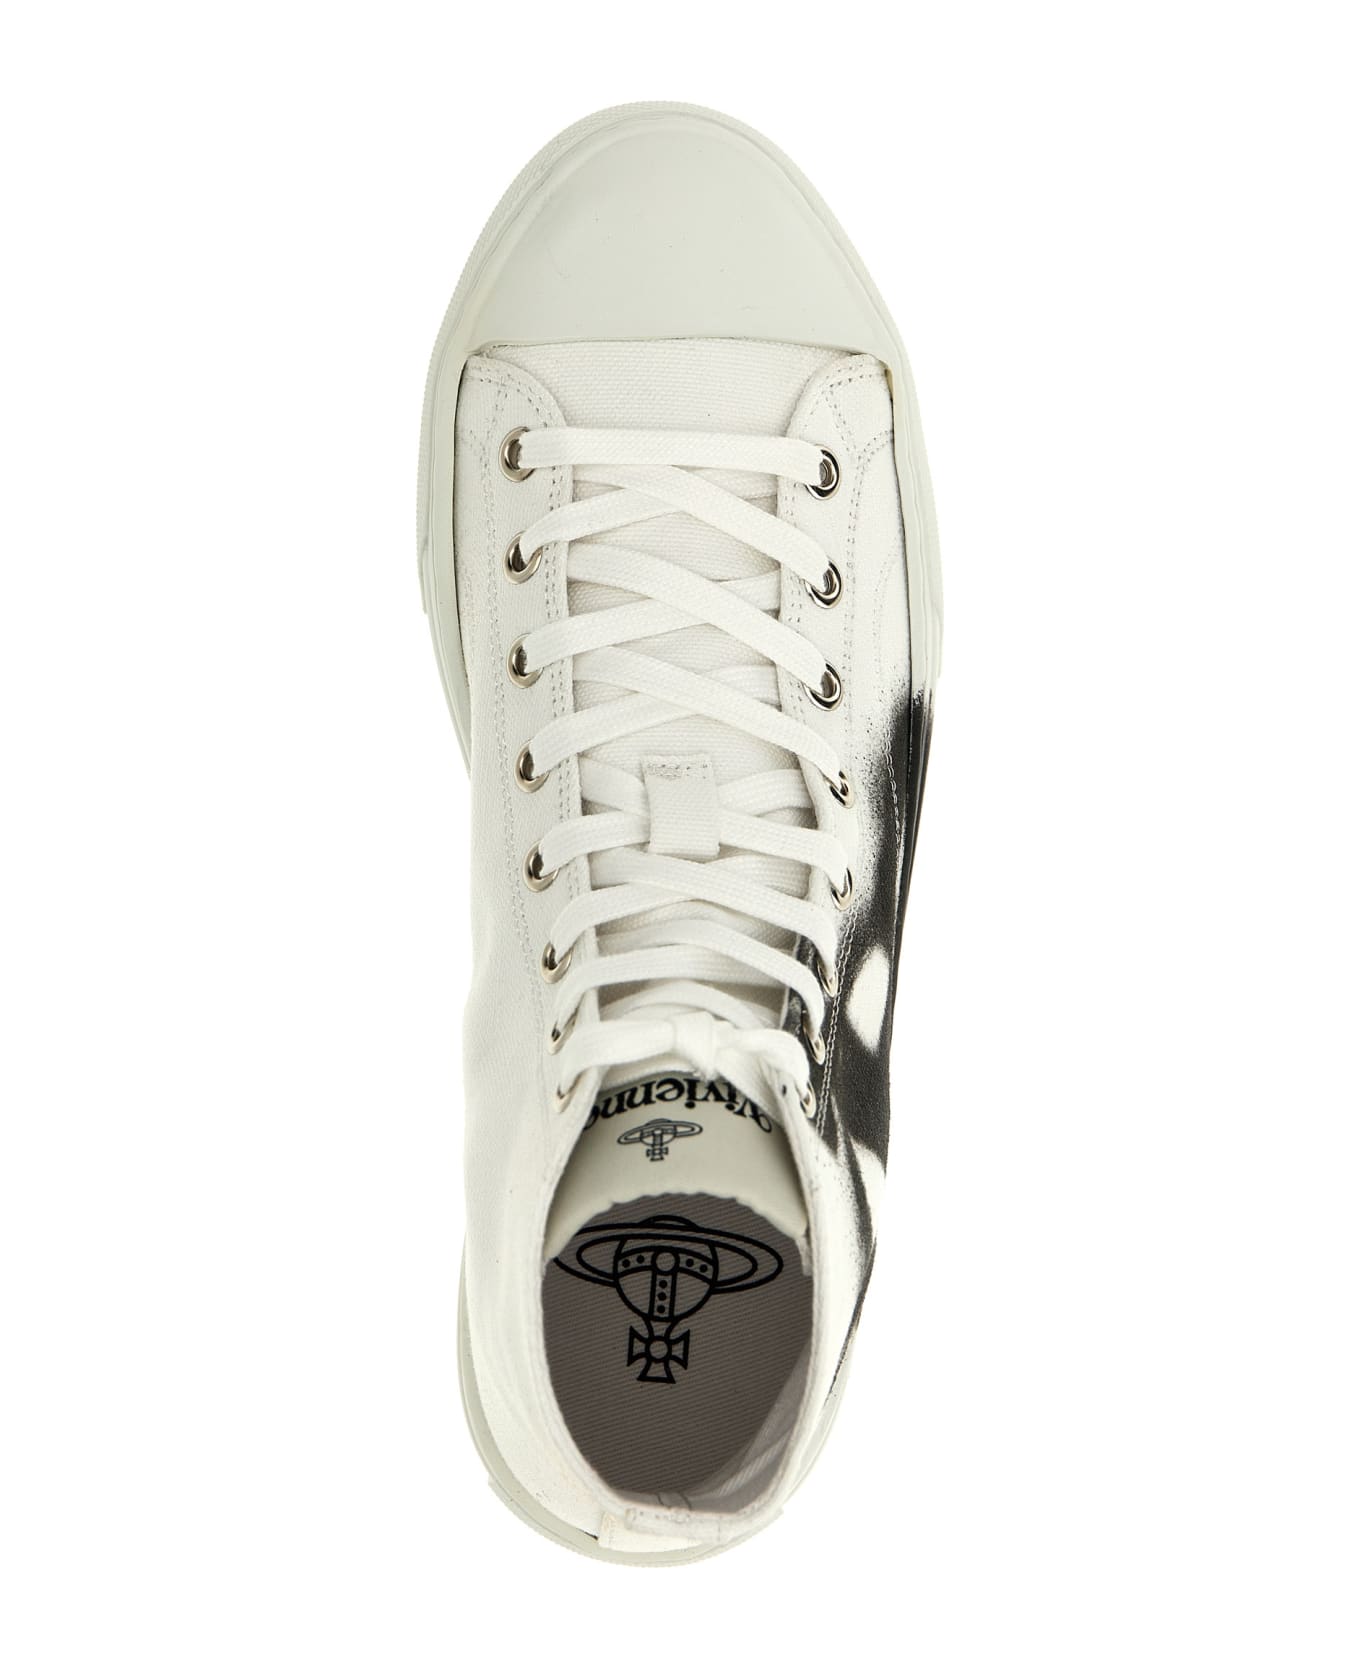 Vivienne Westwood 'plimsoll' Sneakers - White/Black スニーカー